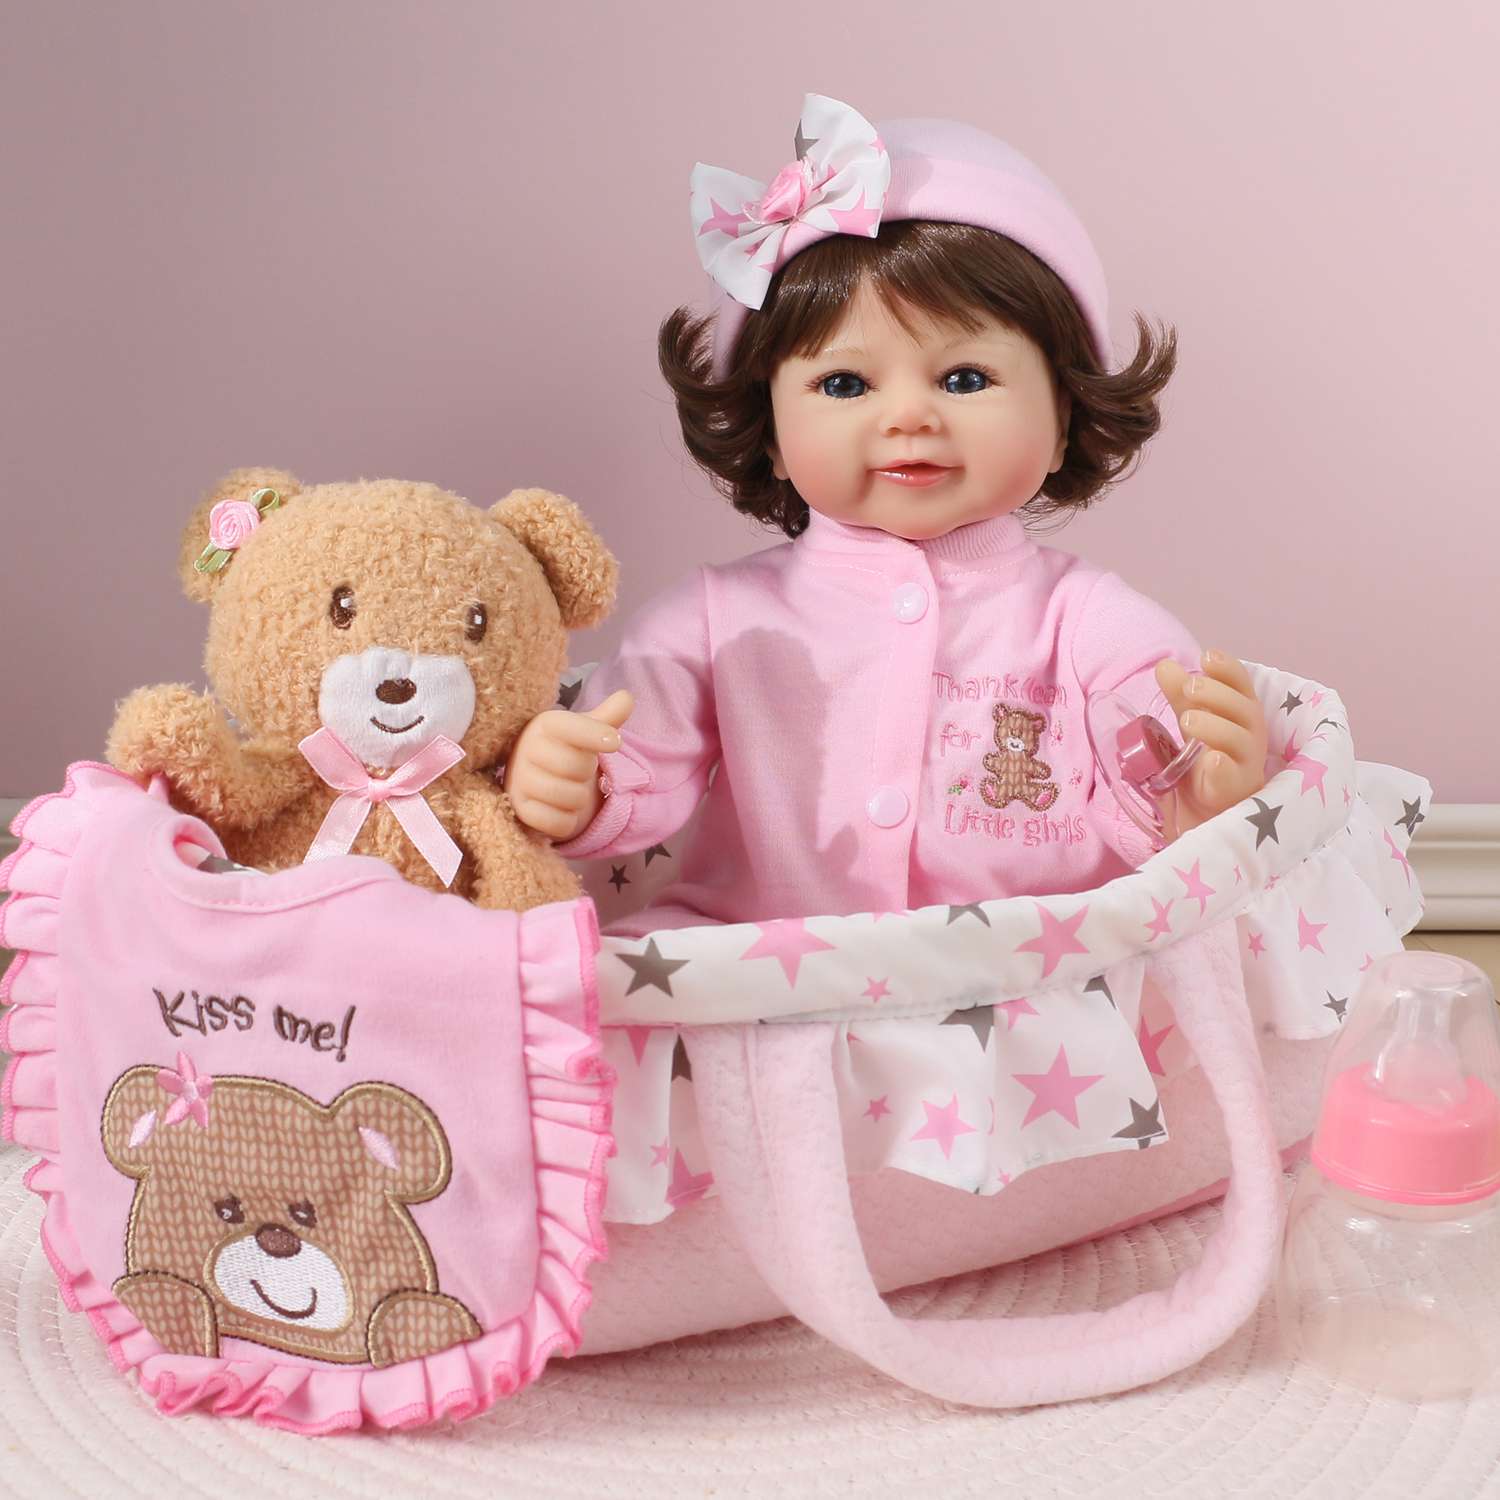 Кукла Реборн QA BABY Варвара девочка большая пупс набор игрушки для девочки 42 см 45008 - фото 8